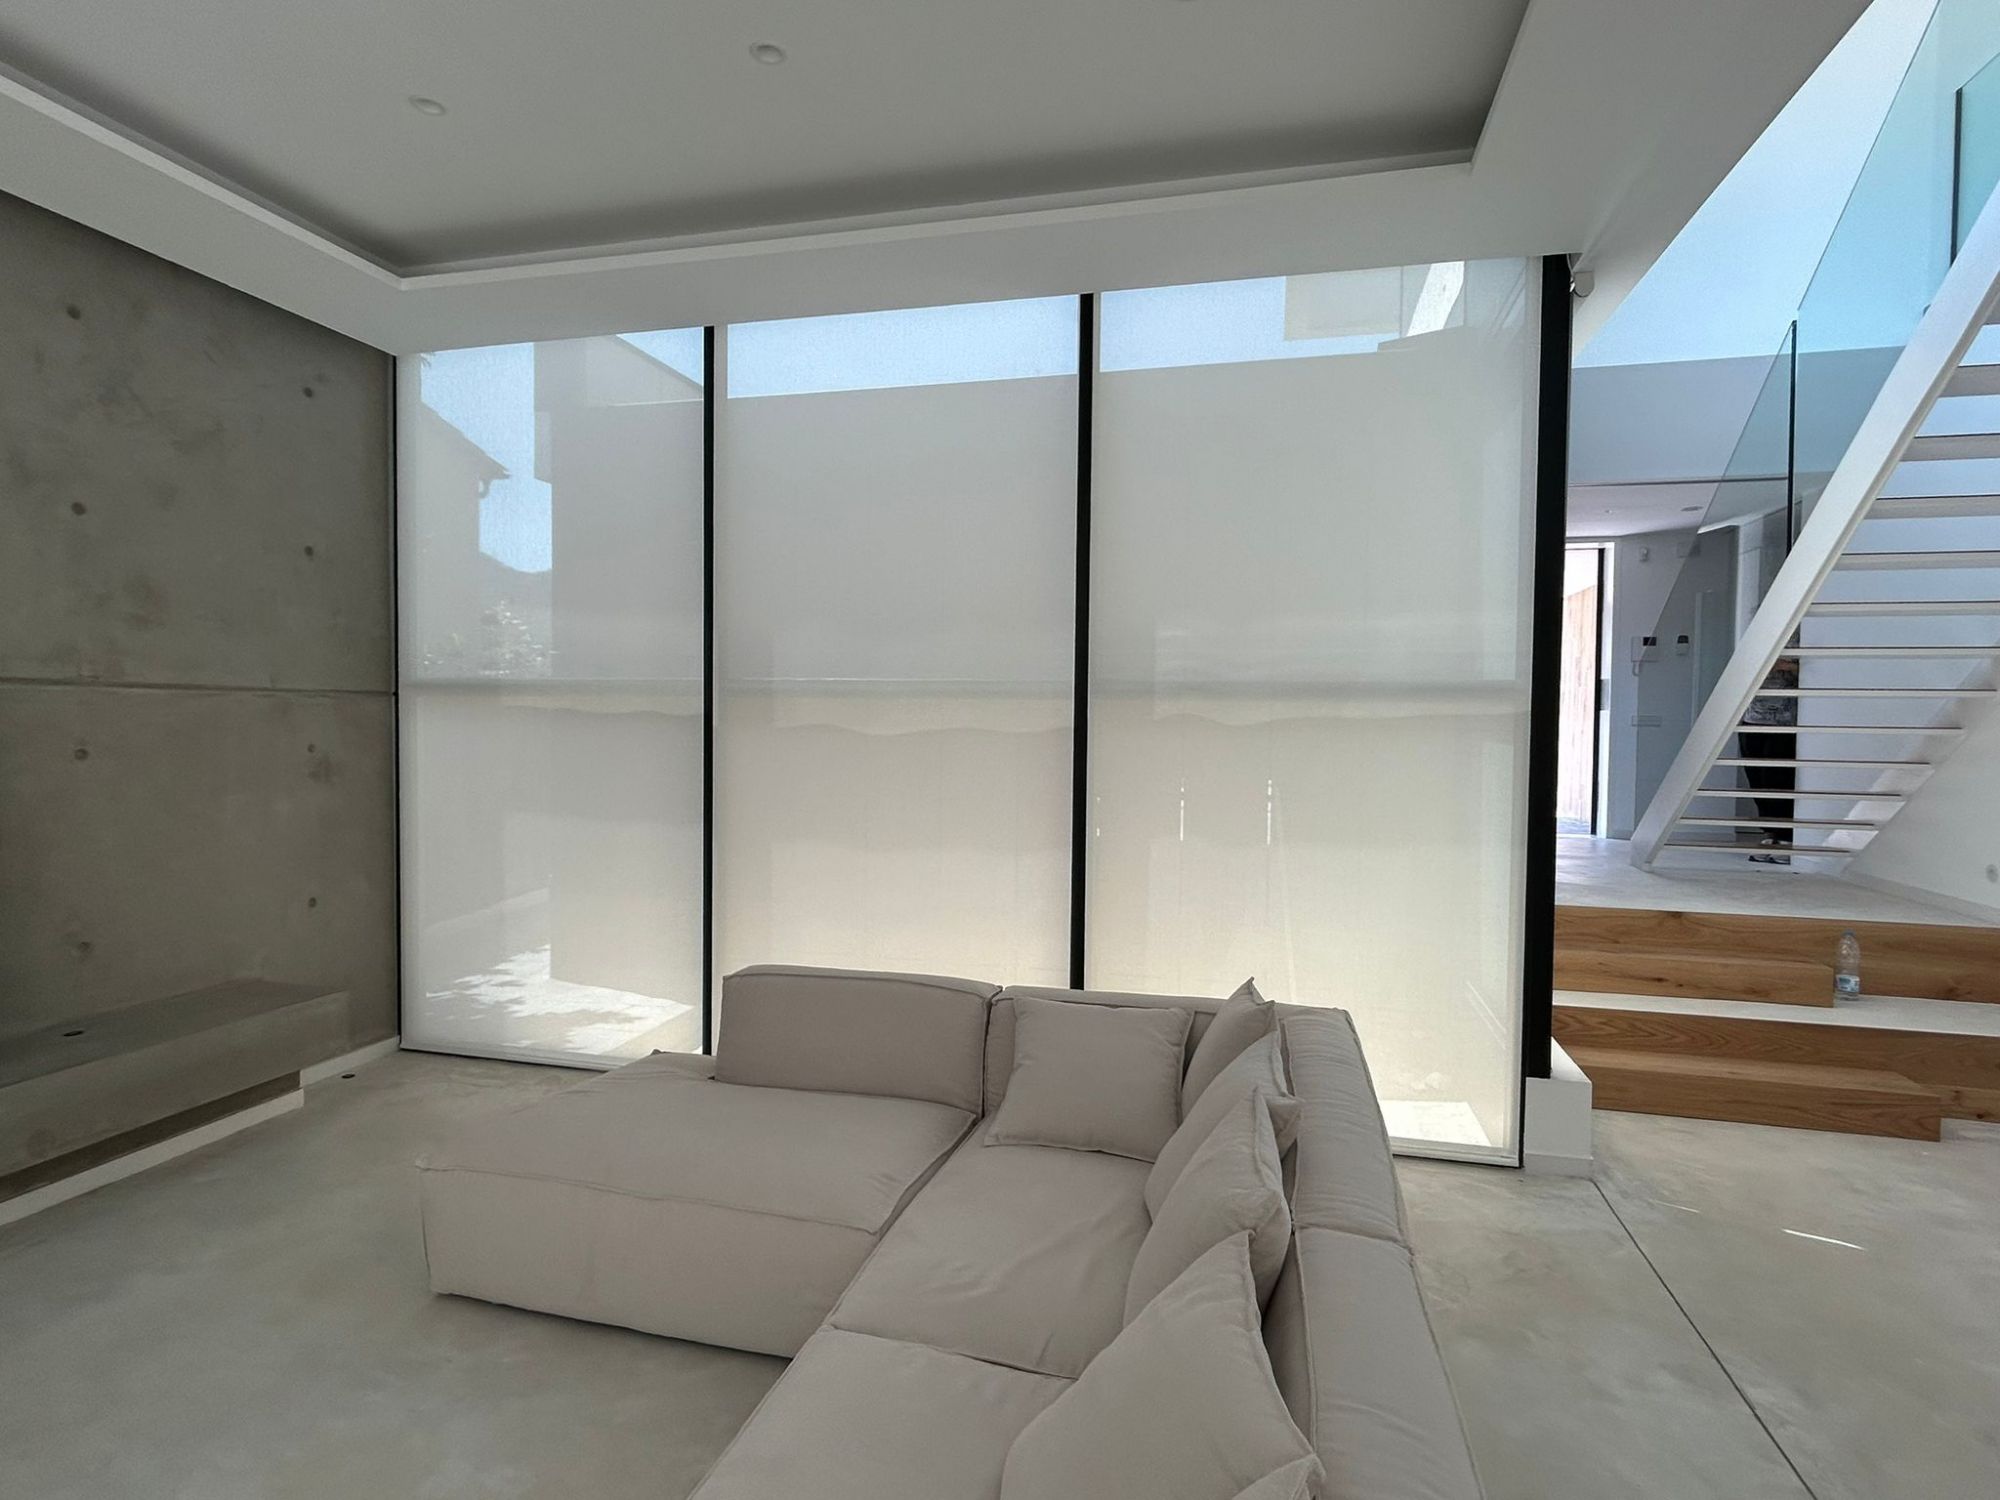 Instalación de cortinas enrollables con tejido técnico screen, referencia Natté 380P abertura del 5% color Pearl/Grey, instaladas en vivienda de Vallromanes